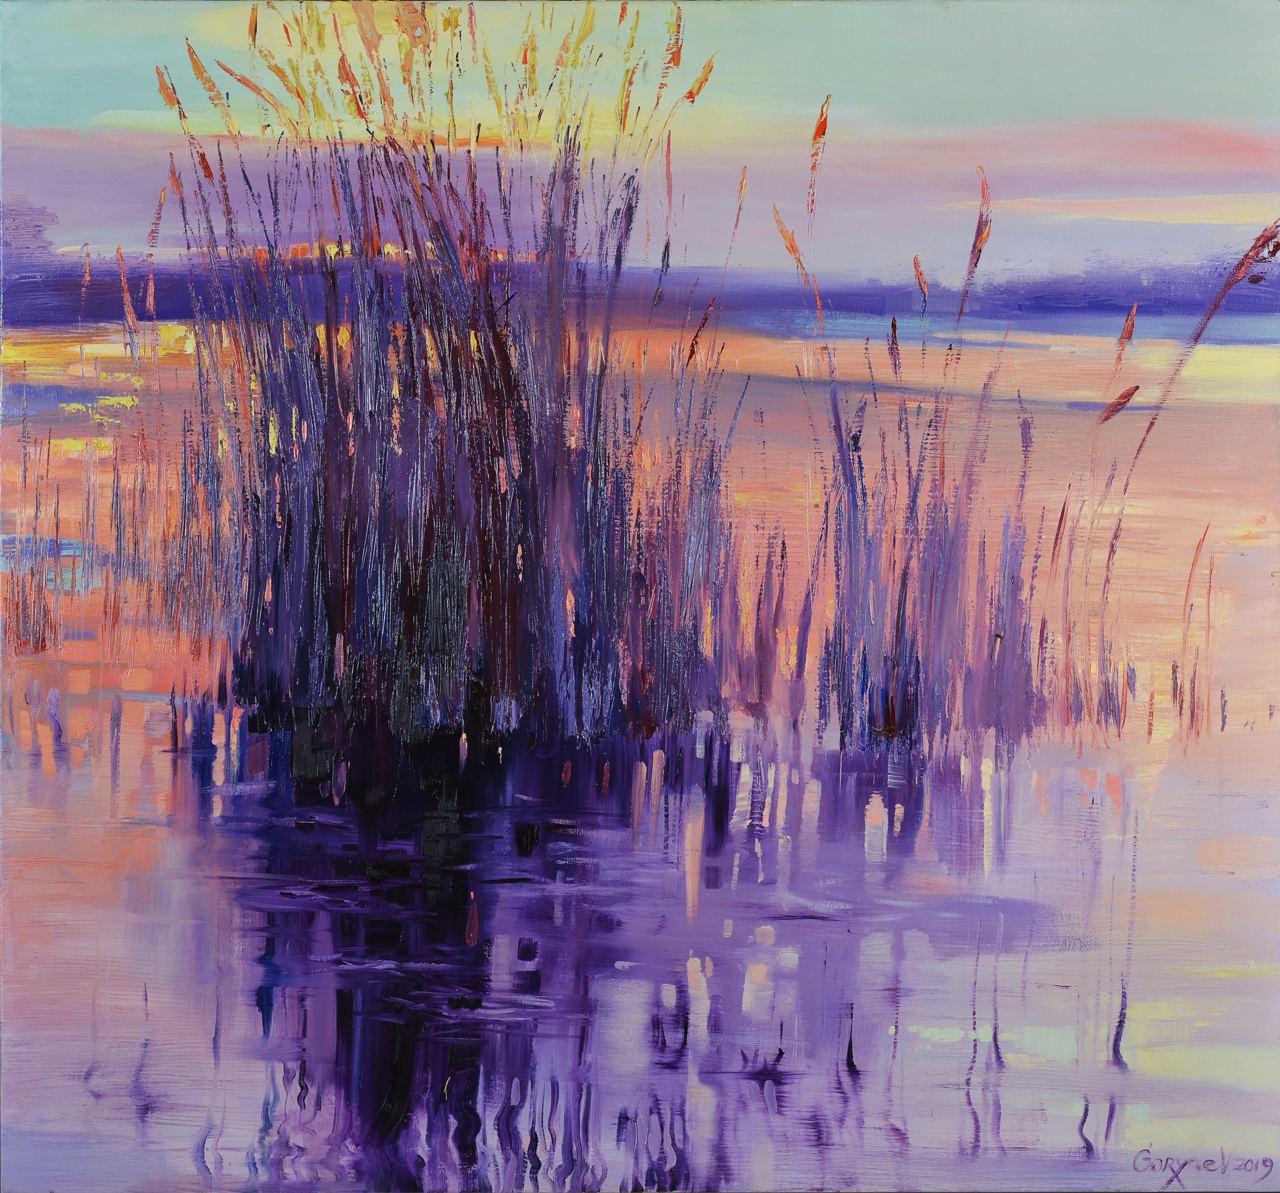 Viktor Horiaiev Landscape Painting - Kamysh